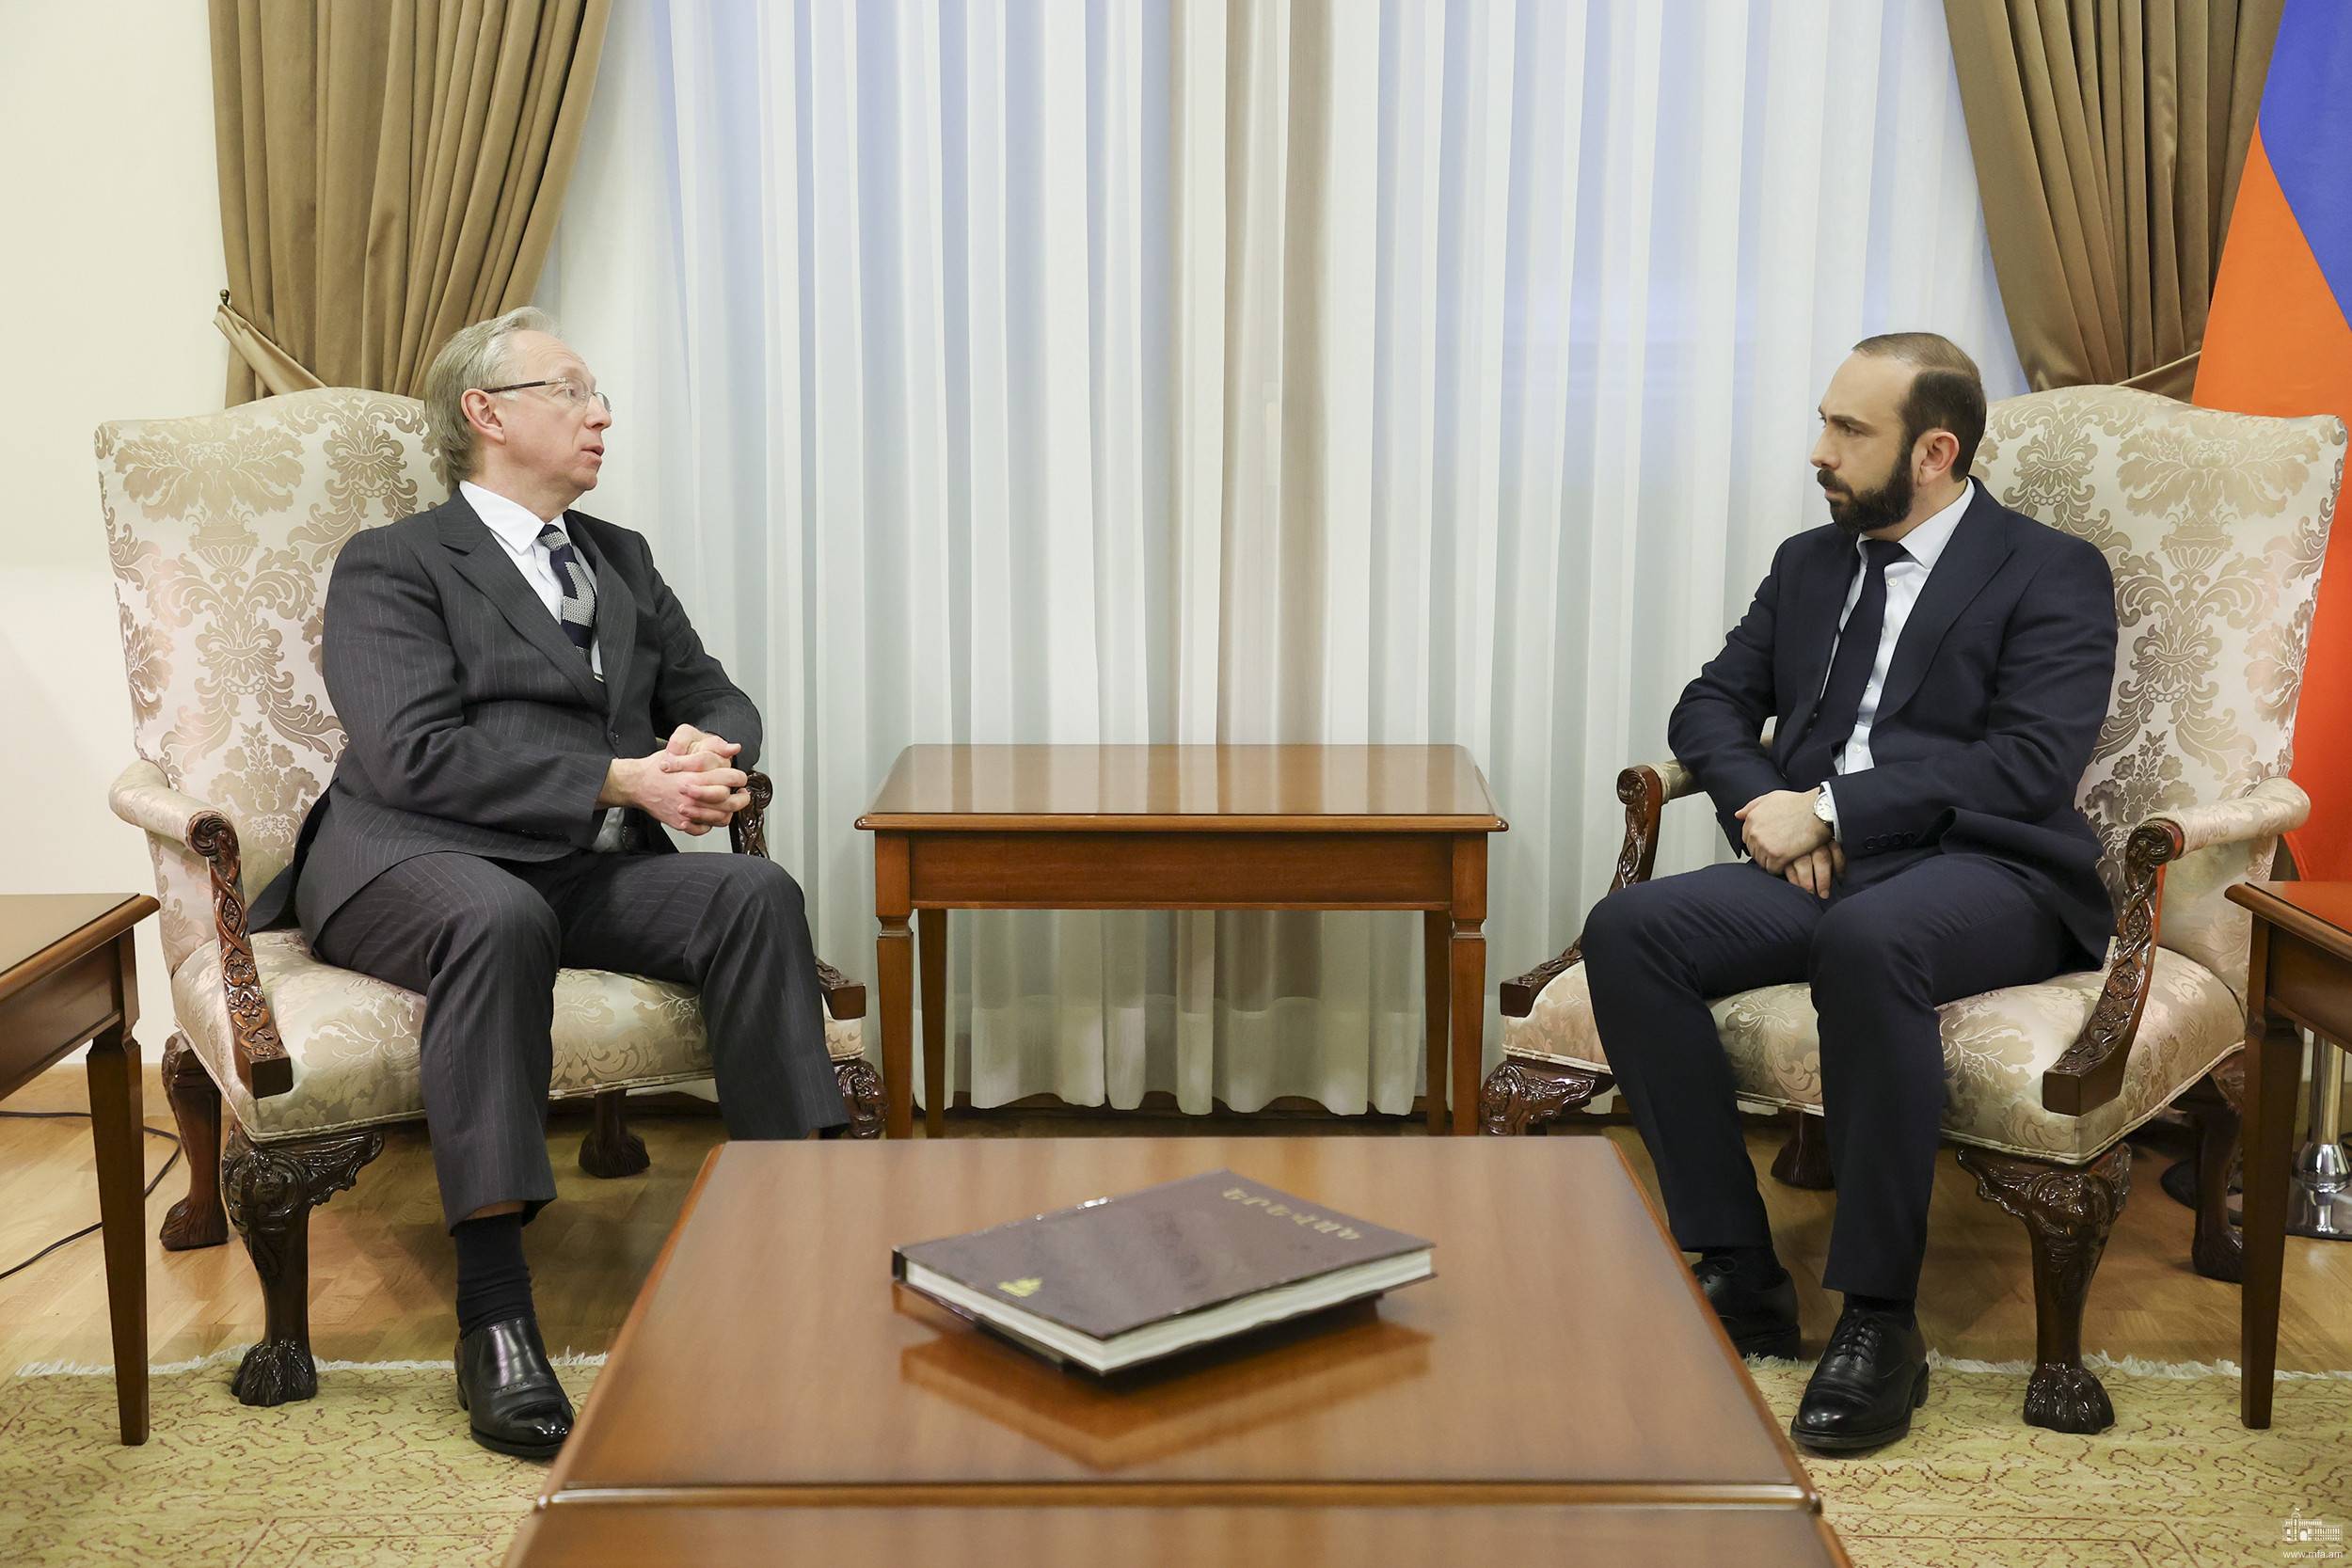 Арарат Мирзоян на встрече с Галузиным подчеркнул необходимость четкой реакции и действенных шагов по восстановлению режима Лачинского коридора